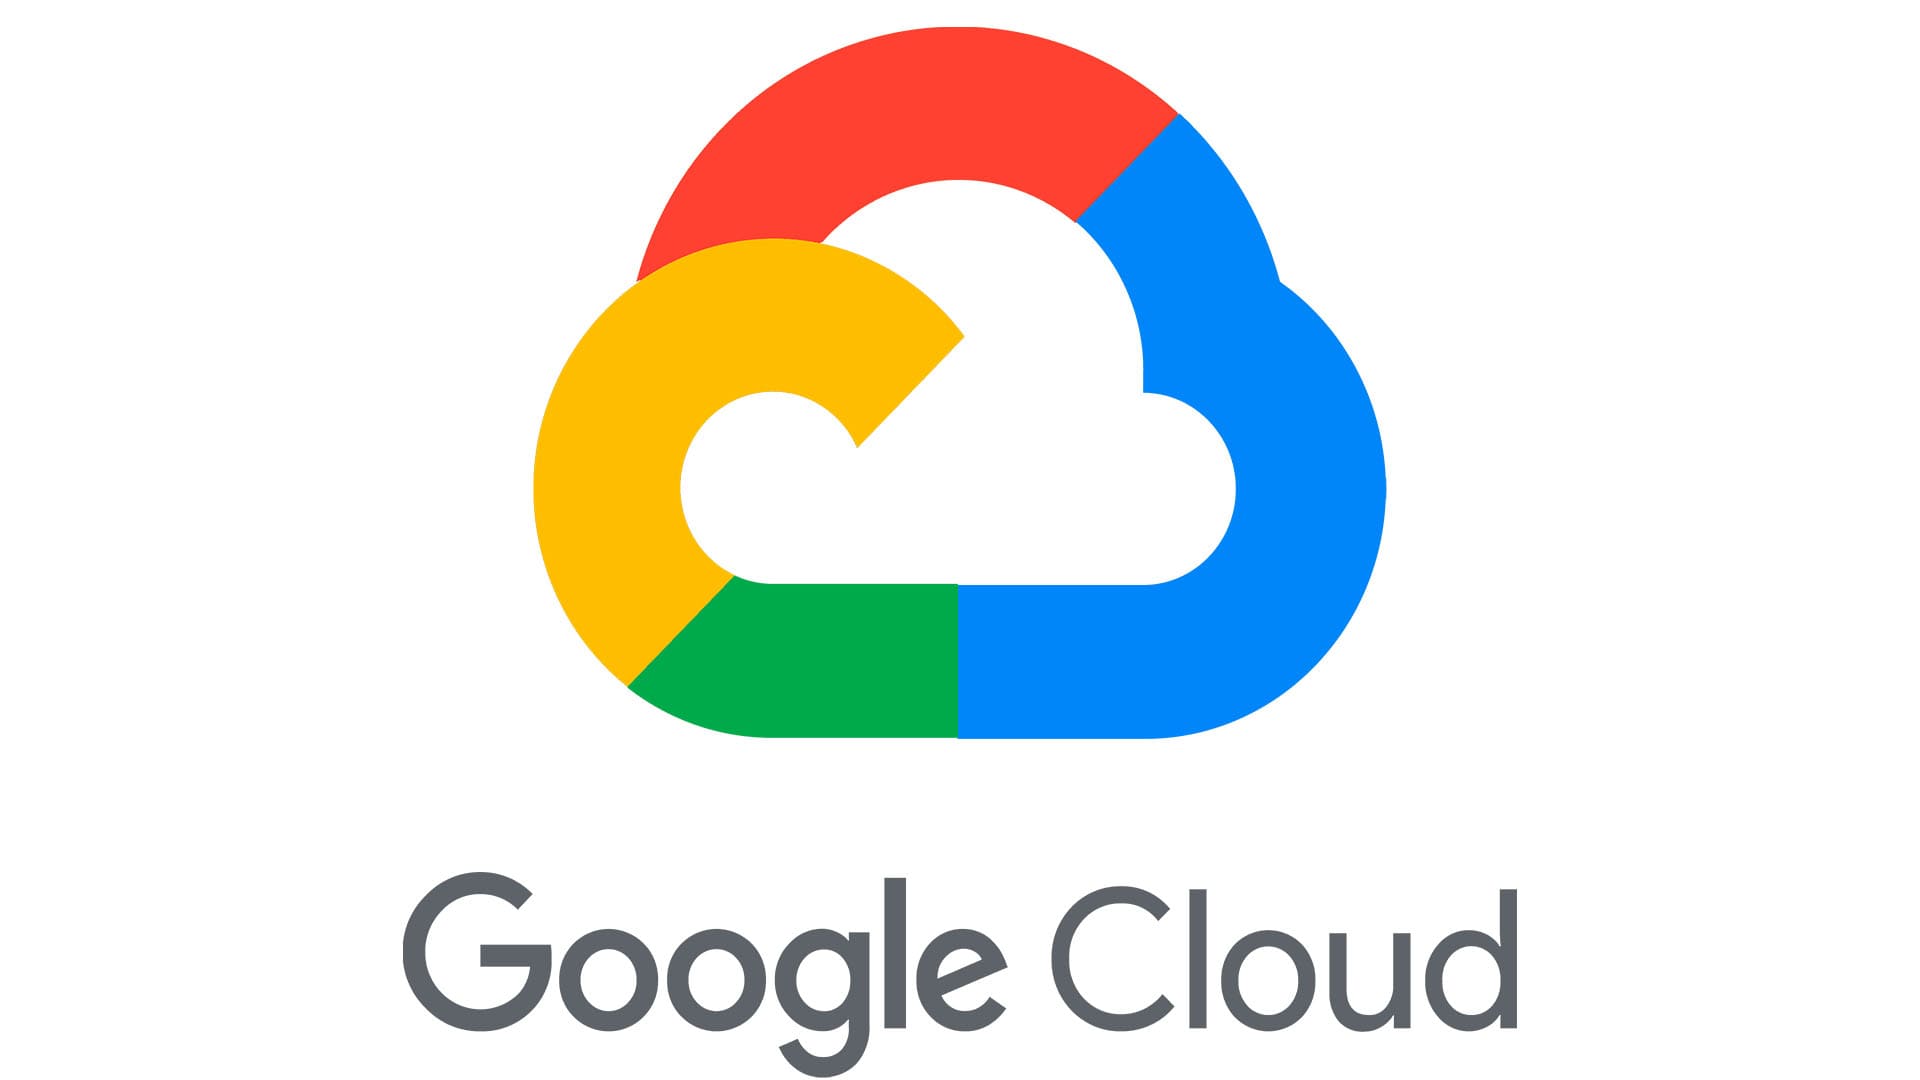 Google Cloud Logo histoire, signification de l'emblème